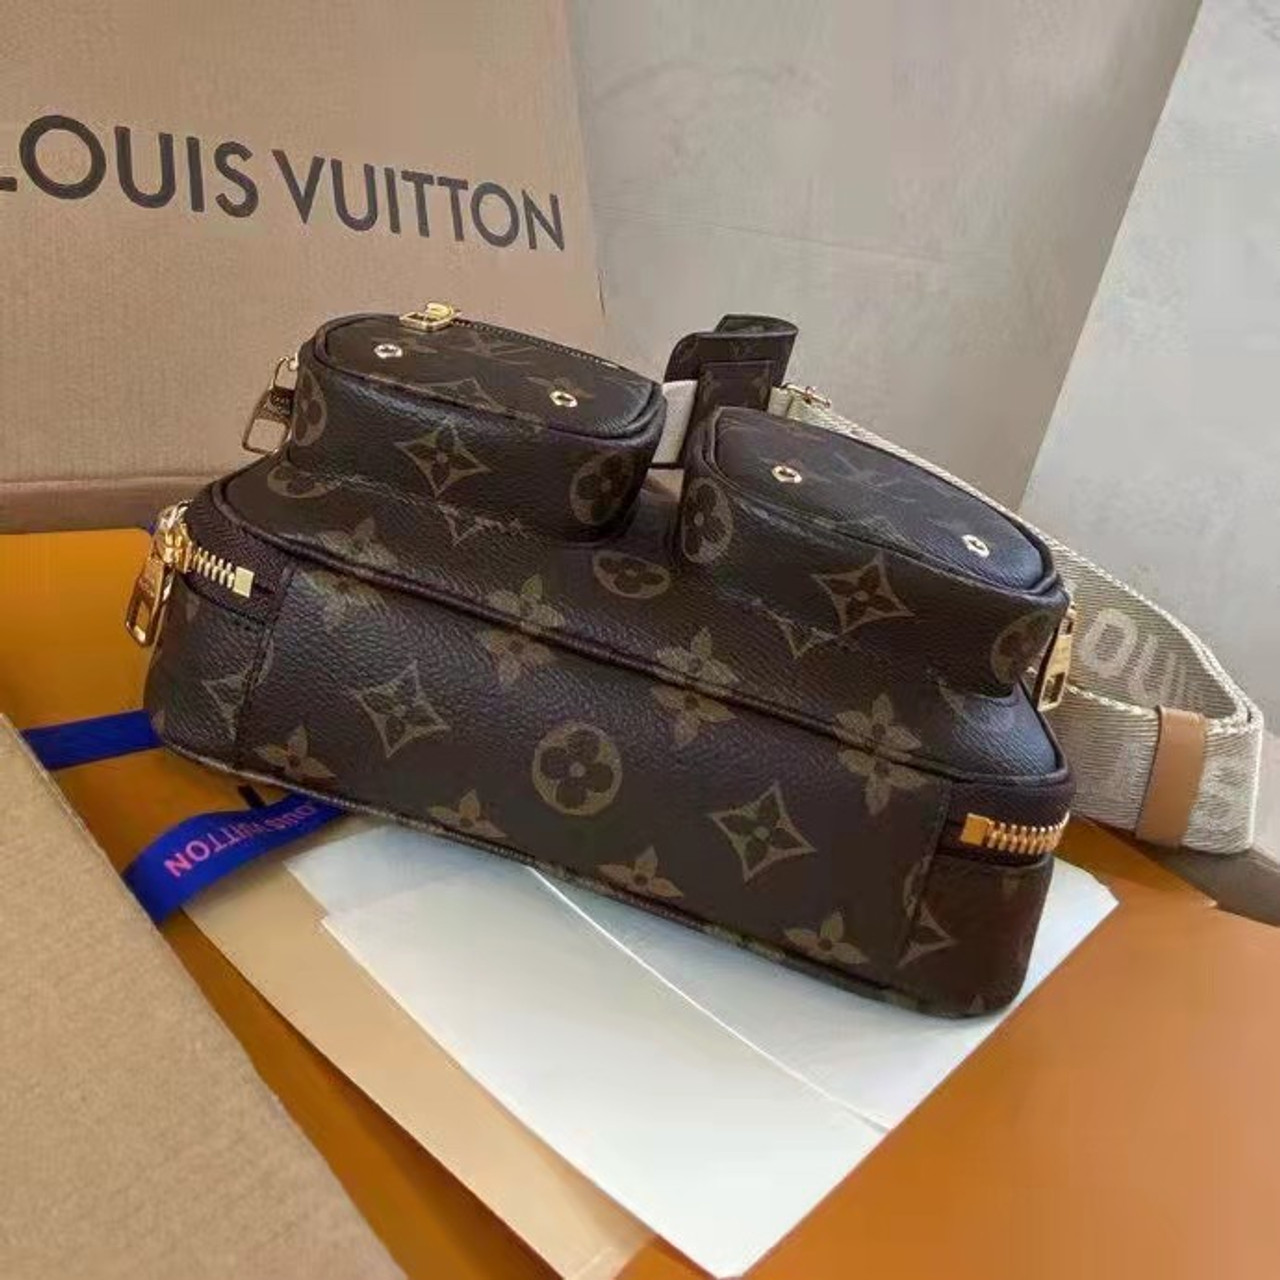 Túi Xách Nữ Hàng hiệu Louis Vuitton - bản like auth 1:1 - TN01